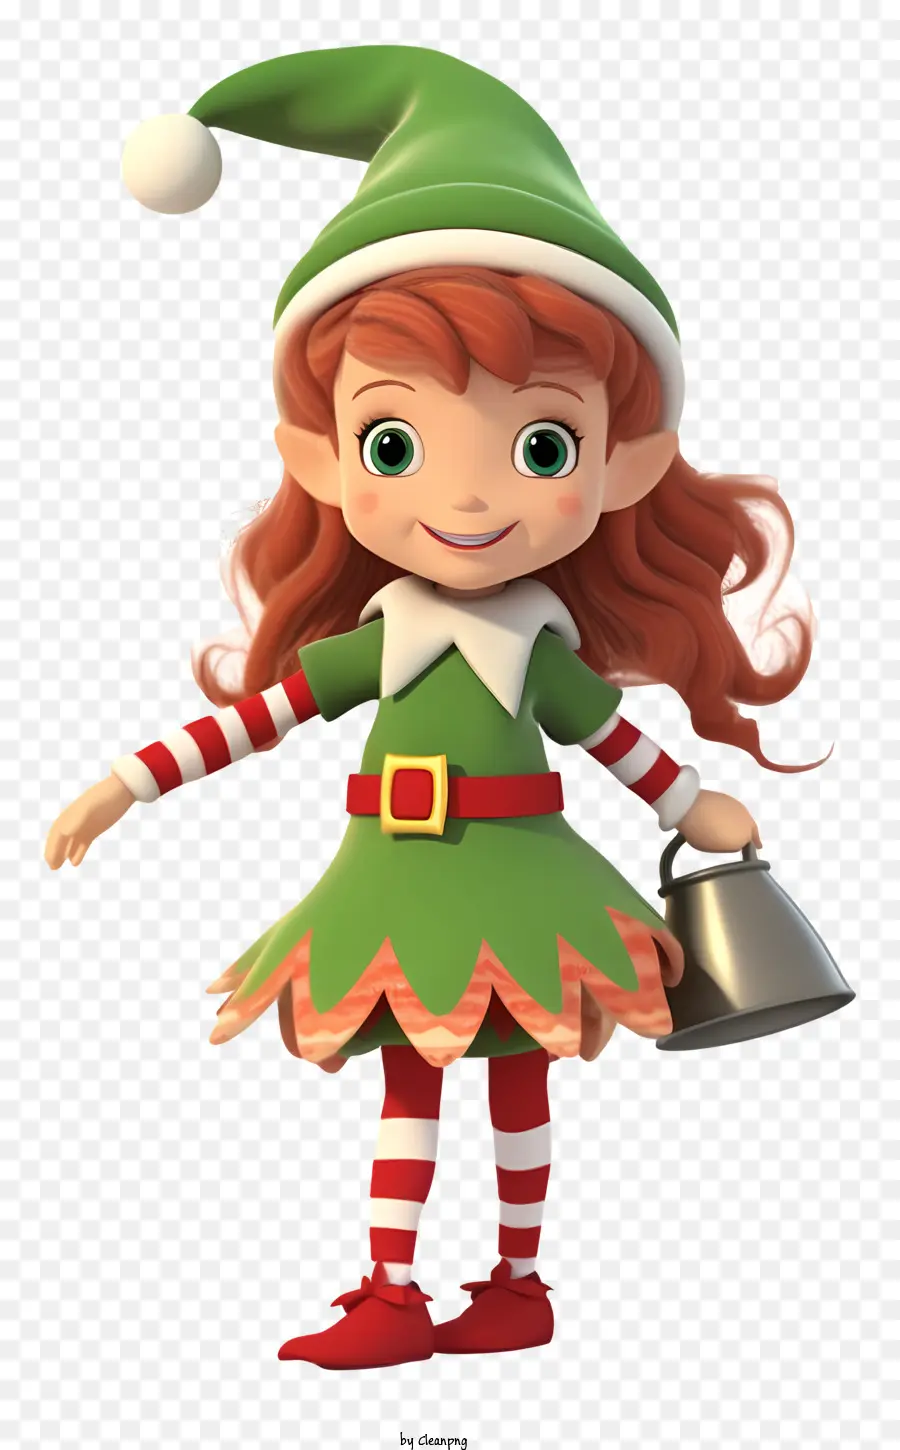 rothaariges Mädchen grün und weiß gestreiftes Hemd Grüne Schürze weißer Schal langes rote Haare - Cartoon Mädchen mit rotem Haar, der Eimer hält Eimer